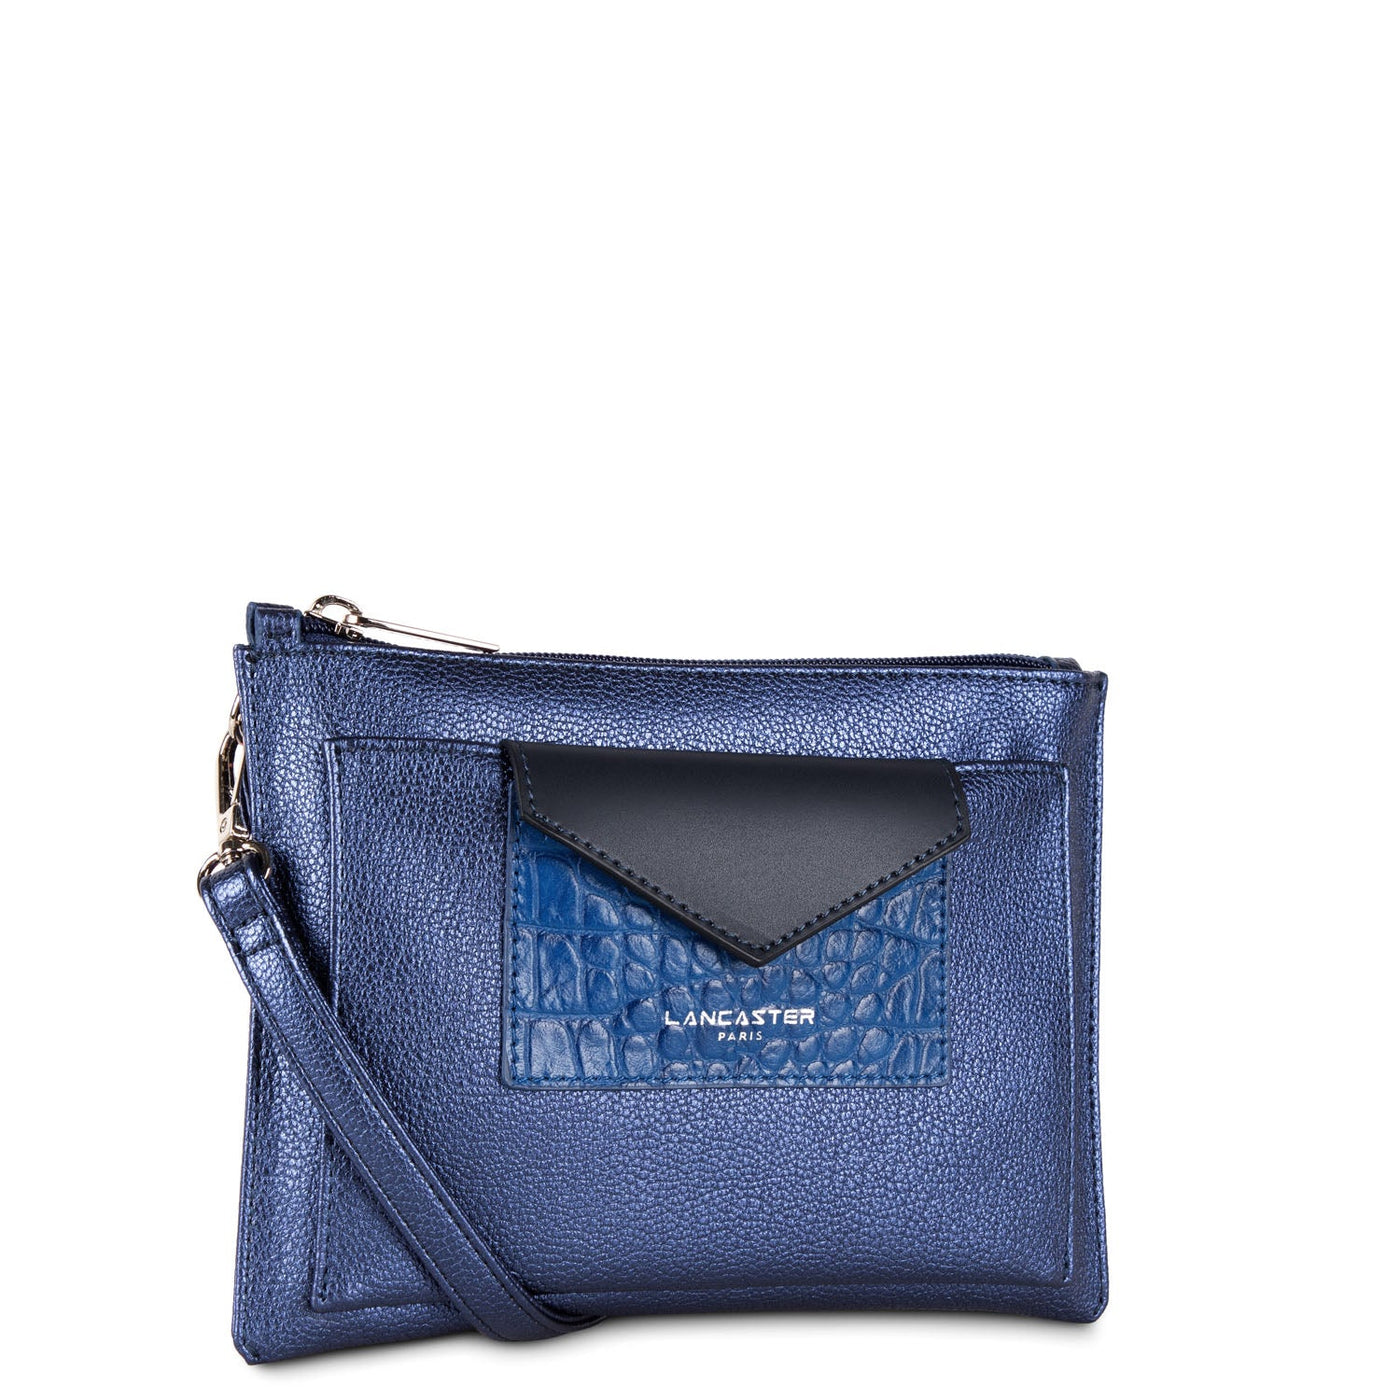 crossbody bag - maya #couleur_saphir-bleu-roi-bleu-fonc